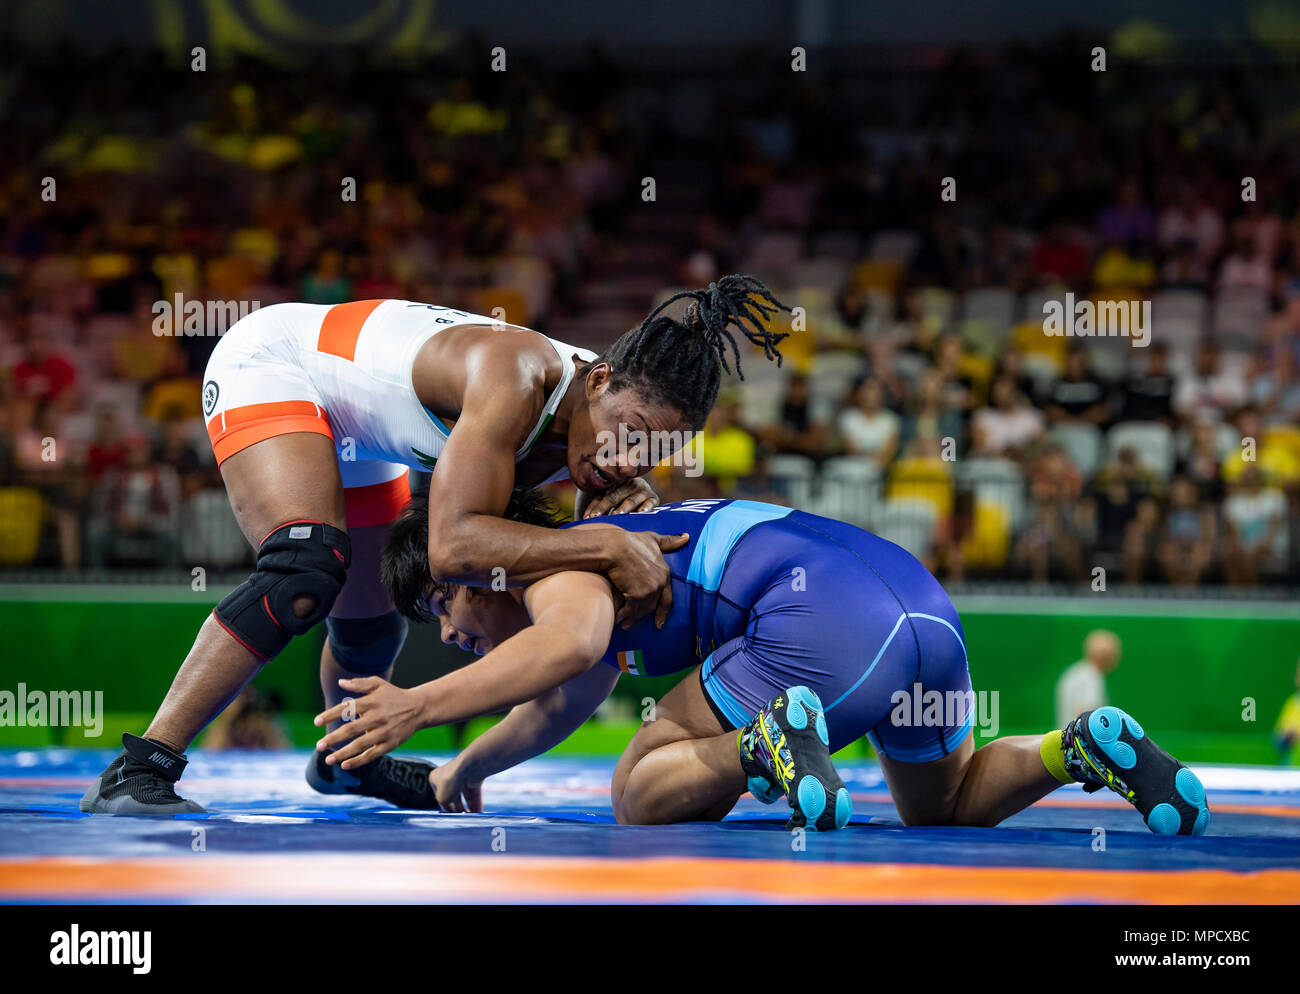 GOLD COAST, AUSTRALIA - 13 de abril: Bendición Oborududu de Nigeria v Divya  Kakran de India compitiendo en el Women's 68kg Semifinales Freestyle  coinciden con el G Fotografía de stock - Alamy